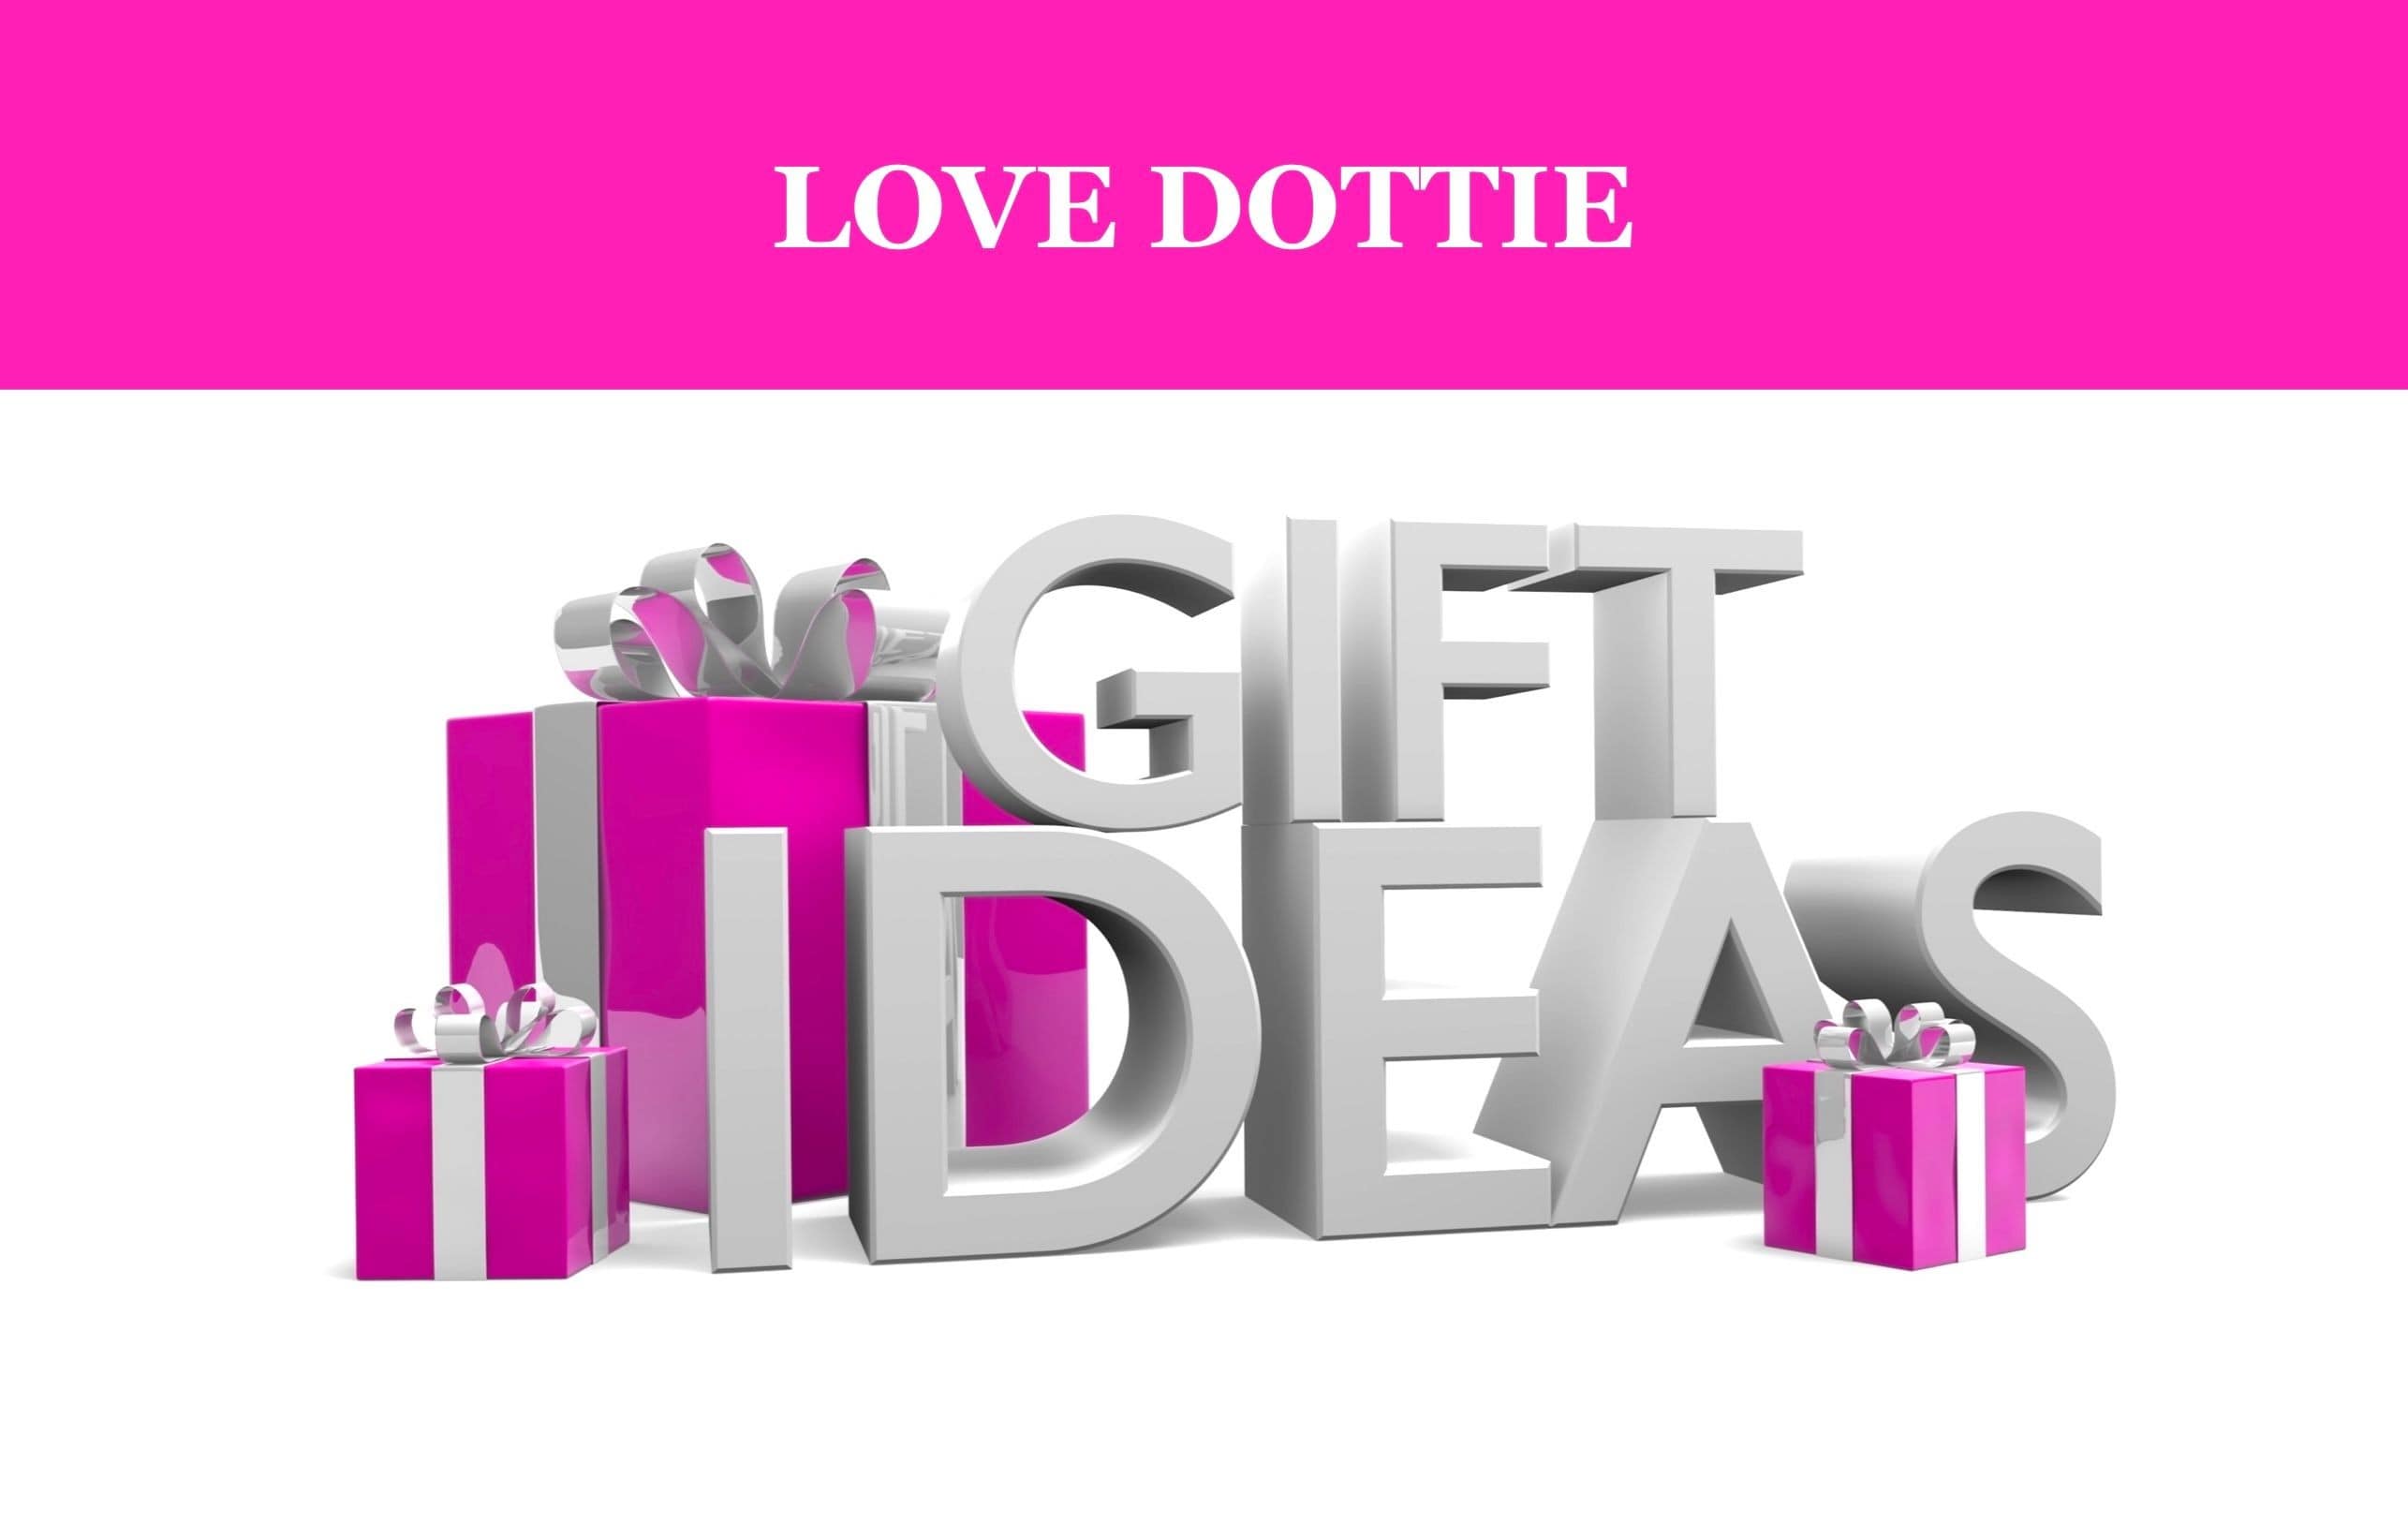 Dottie Dexter's "Love Dottie" highlight's all that she loves!